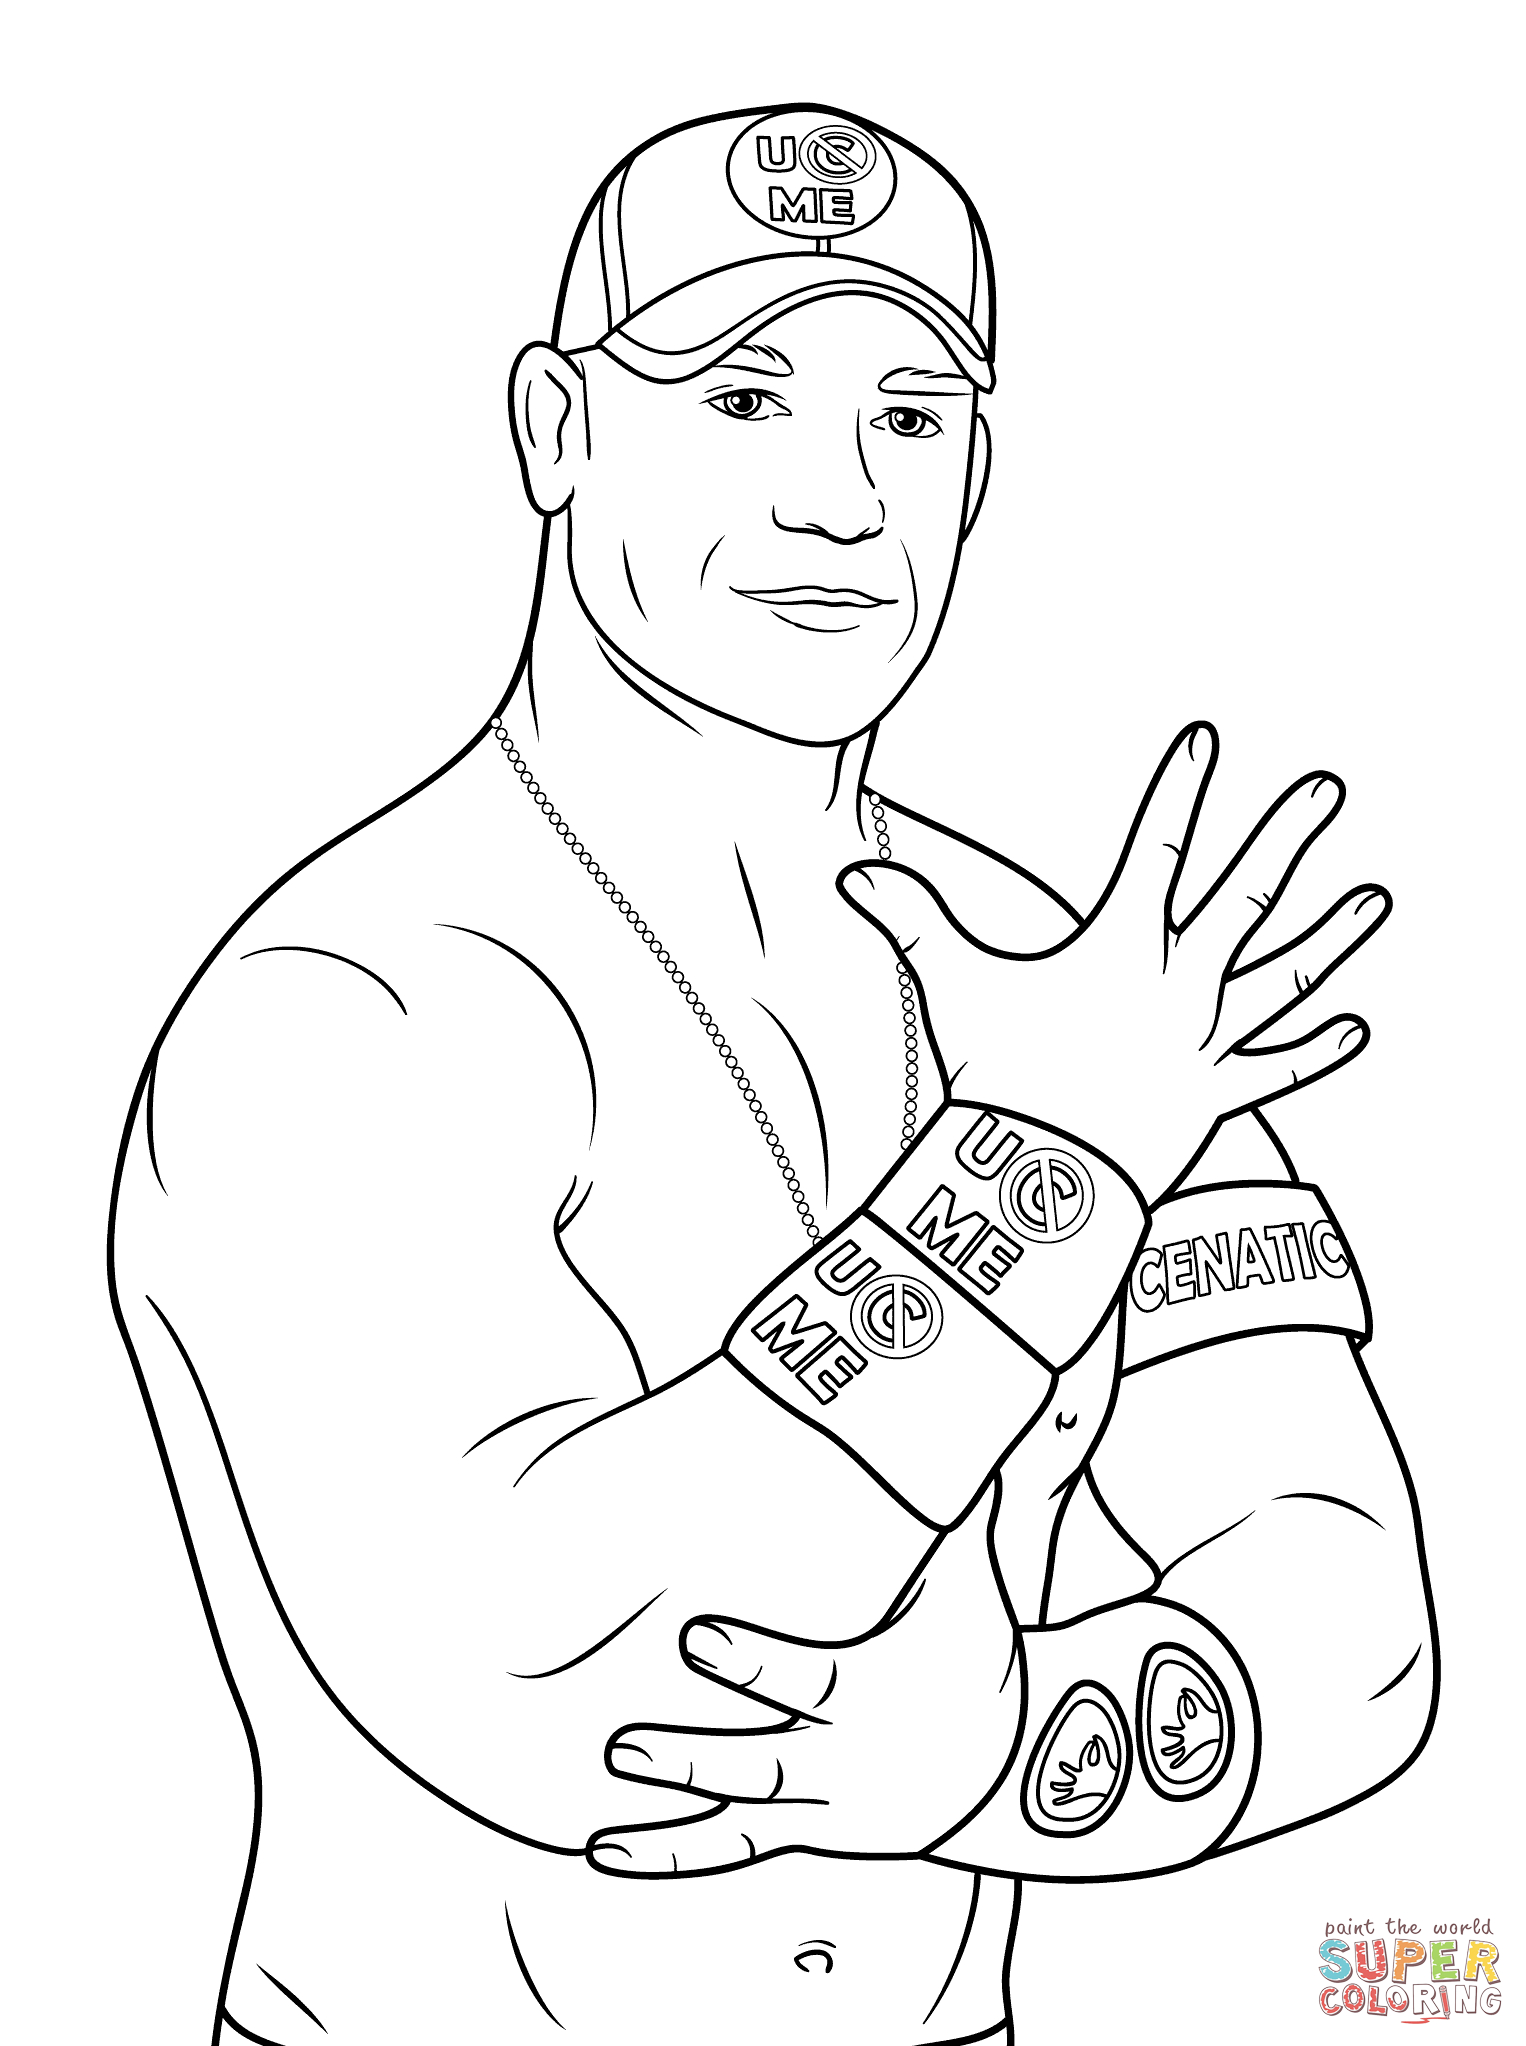 Wwe Coloring Pages Of John Cena John Cena Coloring Page Free Printable Coloring Pages